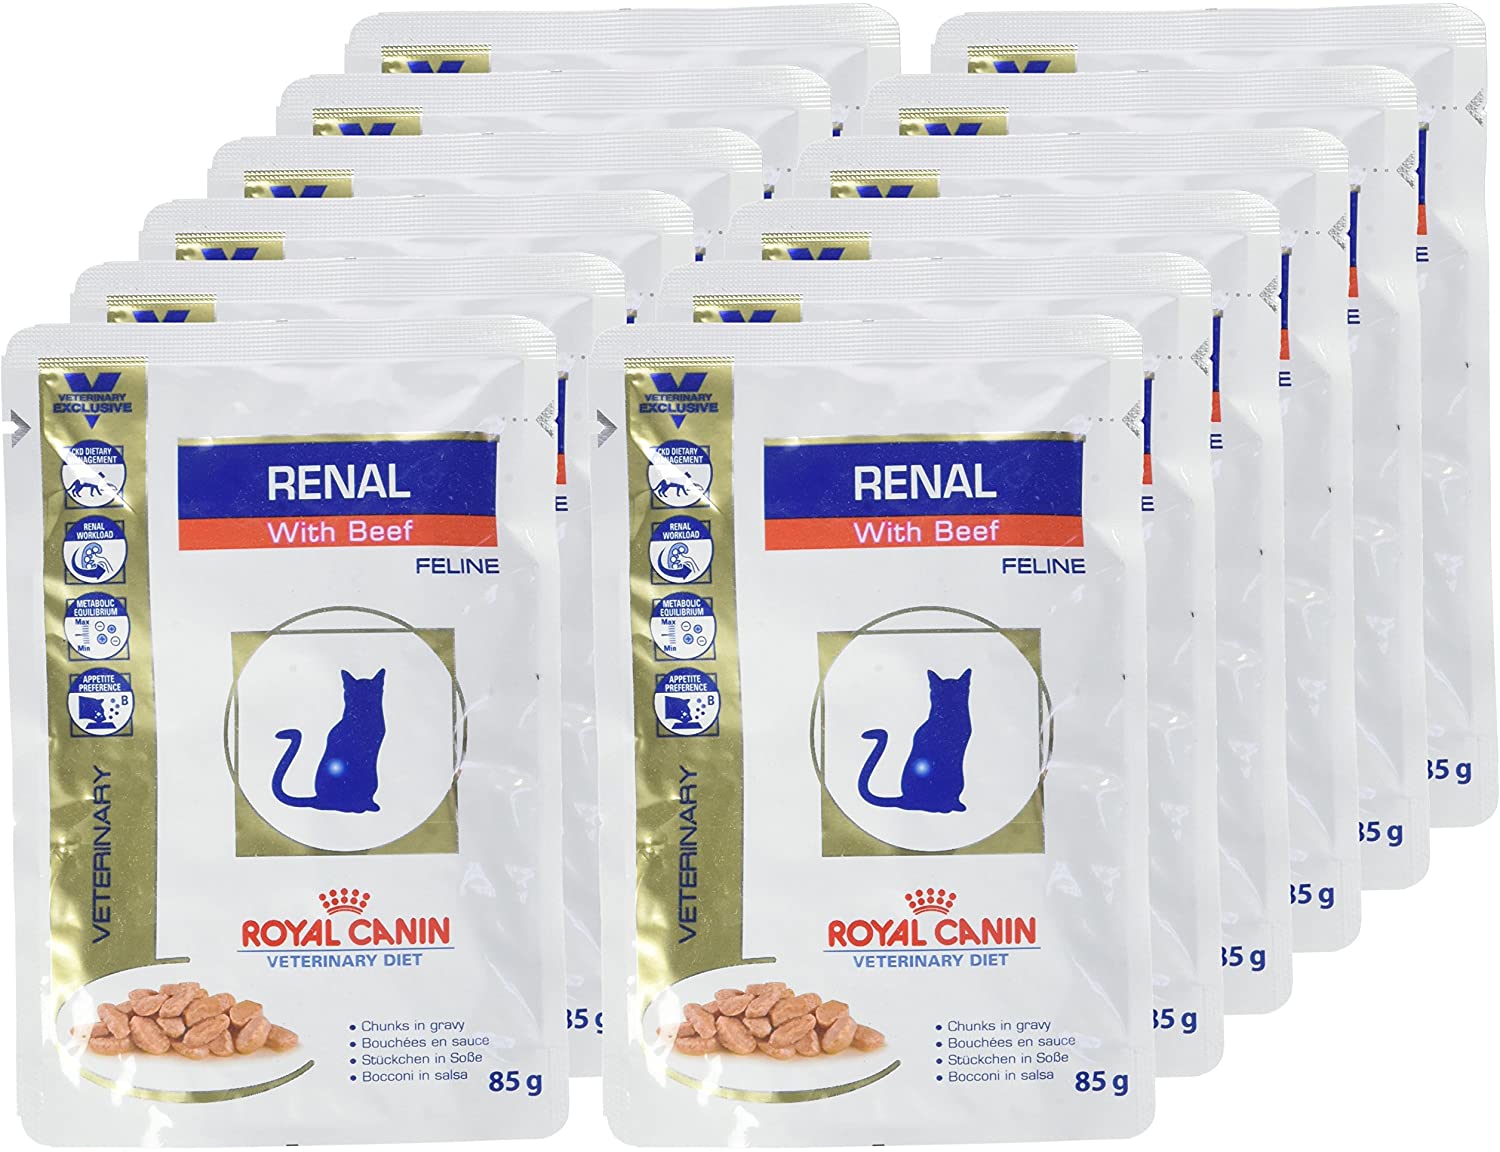  ROYAL CANIN Renal Feline Beef Comida para Gatos - Paquete de 12 x 85 gr - Total: 1020 gr 